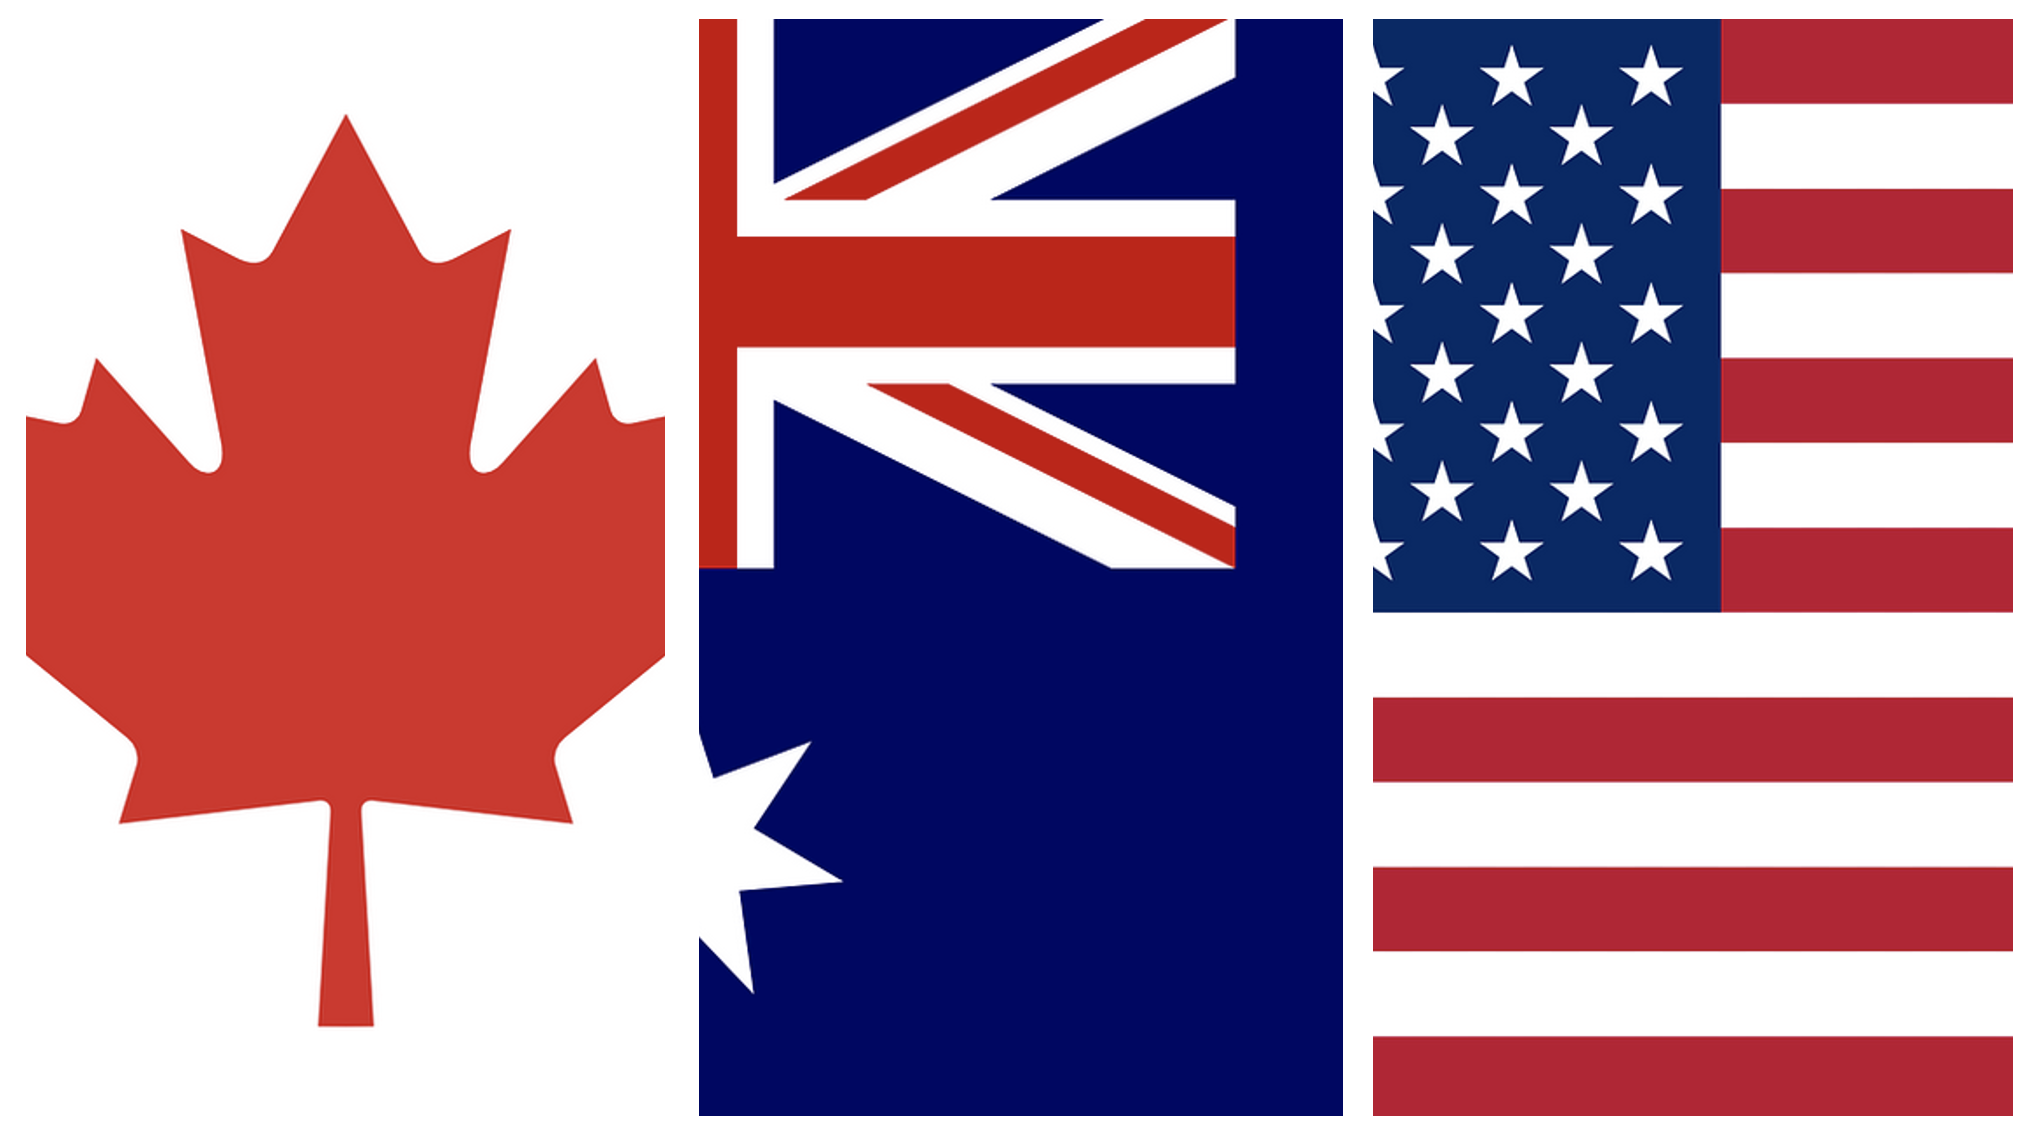 imagem das bandeiras dos 3 países, canadá, austrália e Estados Unidos, nas cores vermelho e azul.